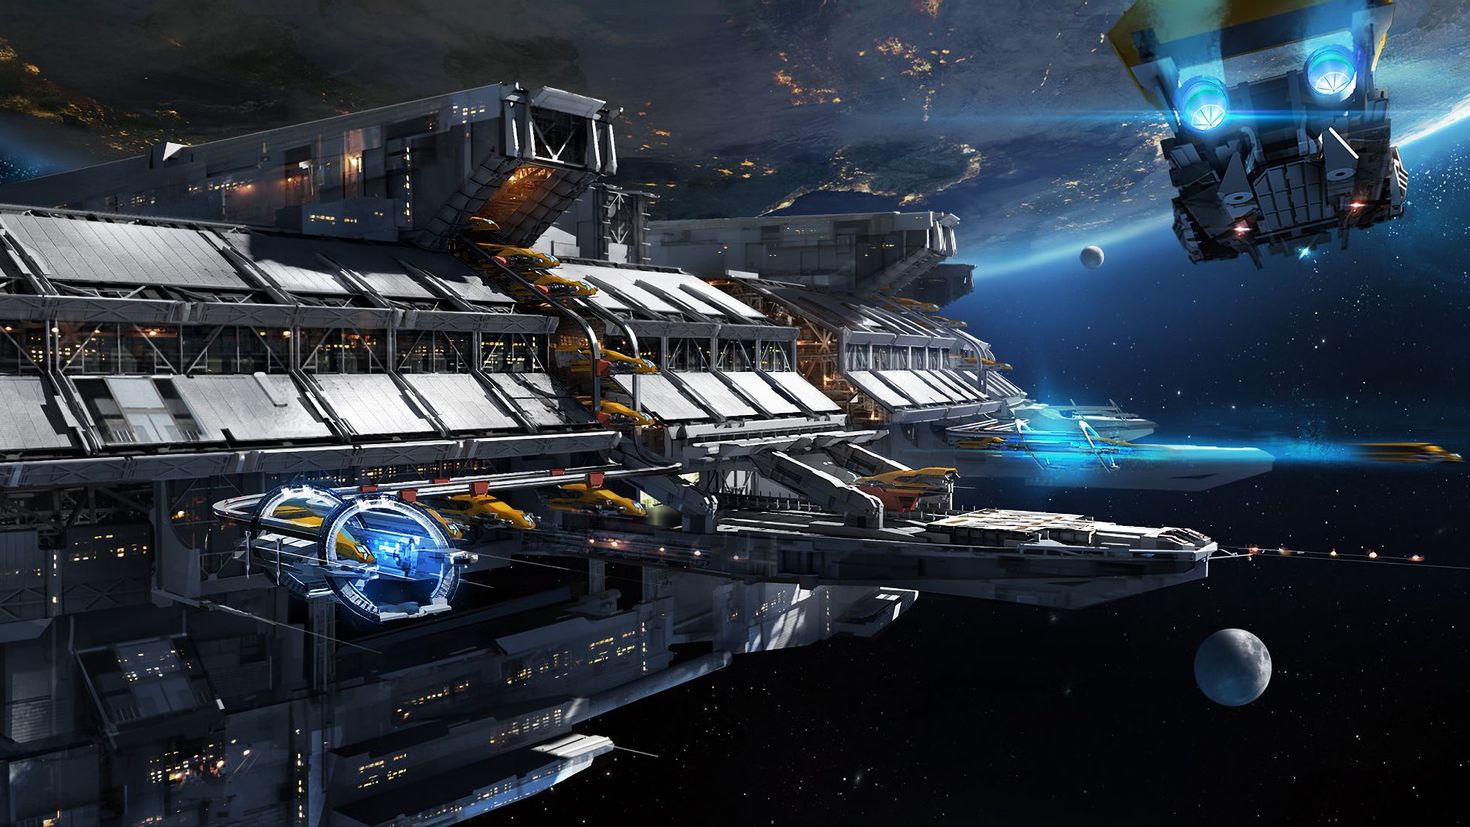 Уникальные космические корабли. Орбитальная станция Sci Fi платформа. Звёздные войны космические верфи. Спейс инджинер. Космик корабль.